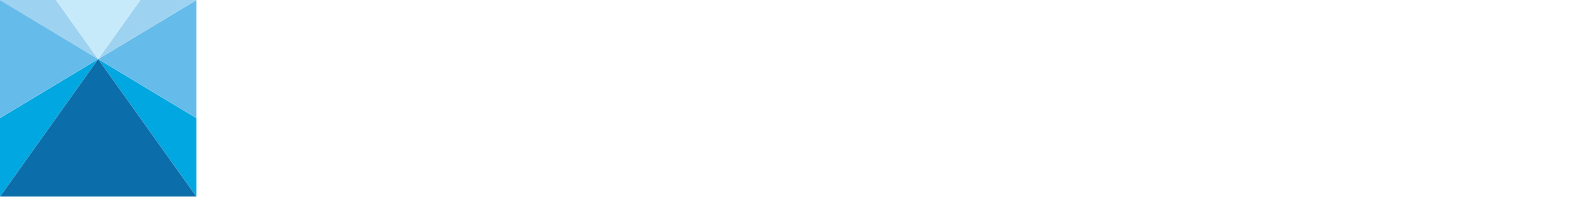 Nippon Steel
 logo large for dark backgrounds (transparent PNG)